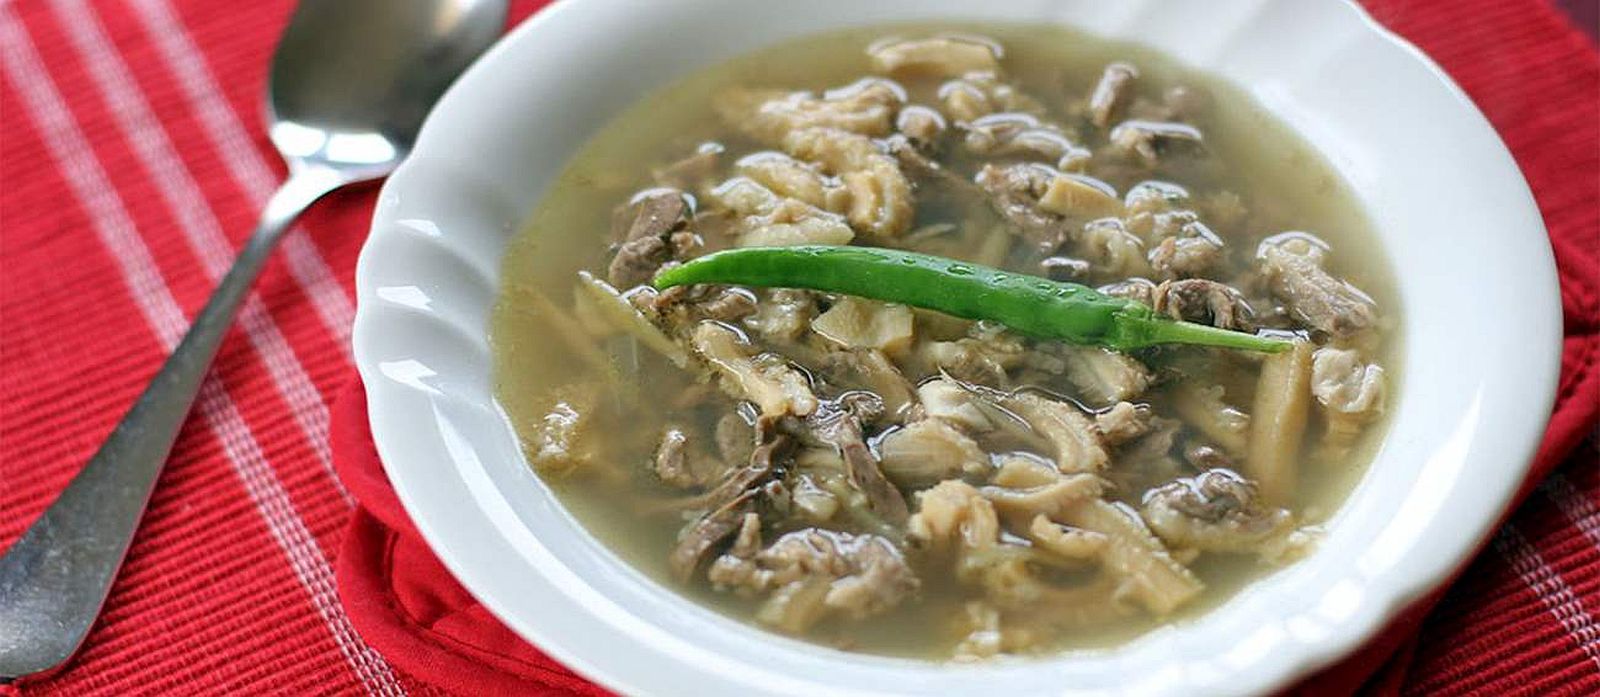 PHILIPPINEN REISEN im PHILIPPINEN MAGAZIN - Leitfaden zu philippinischen Suppen